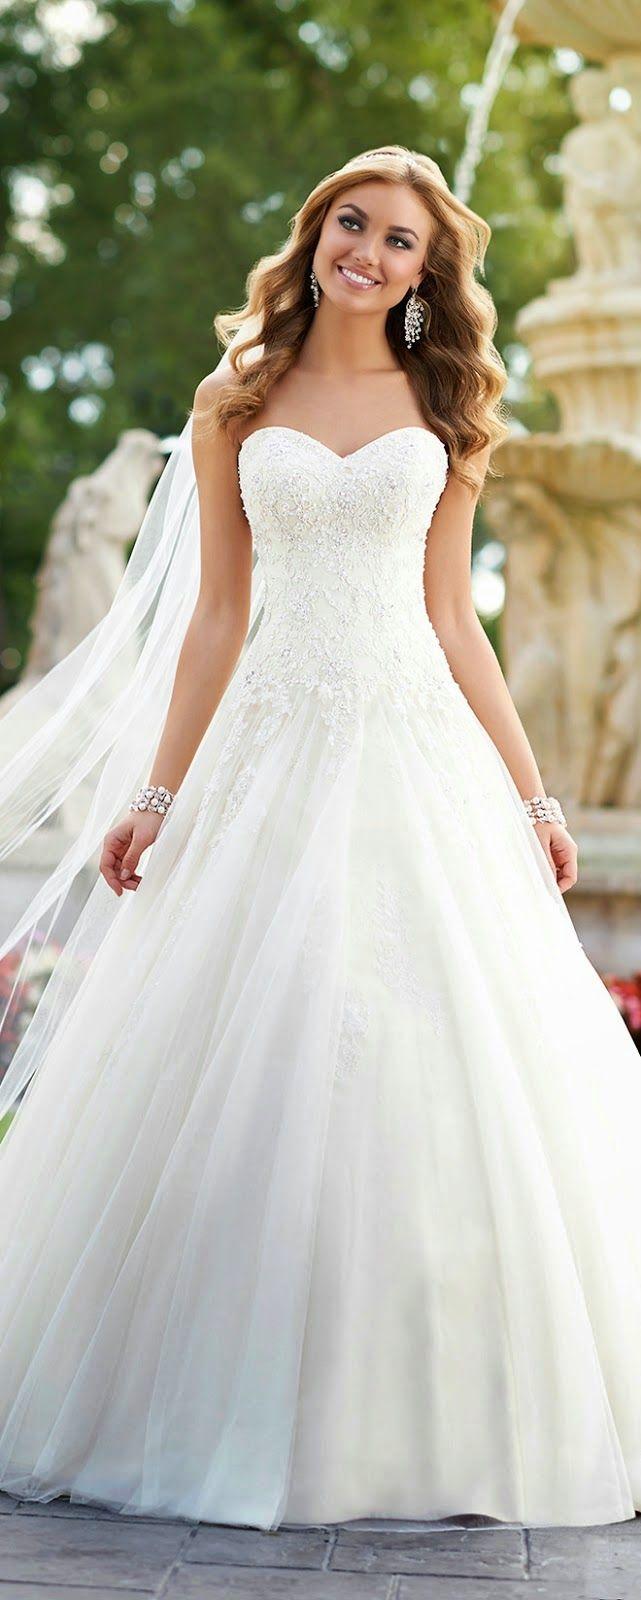 Hochzeit - Best Wedding Dresses Of 2014